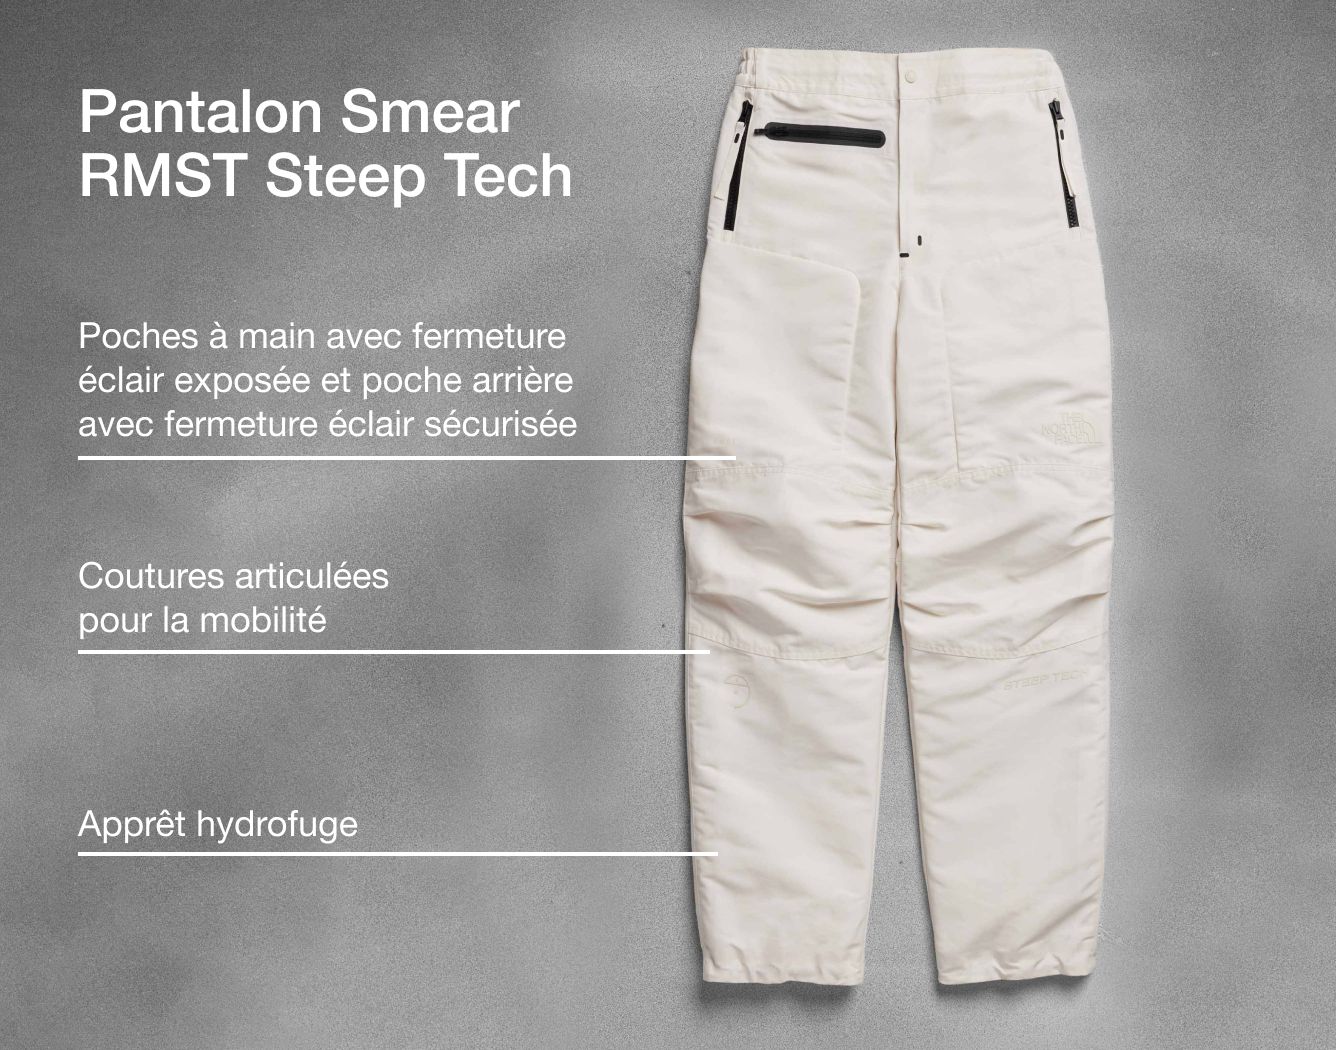 Photo studio du pantalon Smear RMST Steep Tech avec superposition de texte indiquant la fabrication et les coutures.